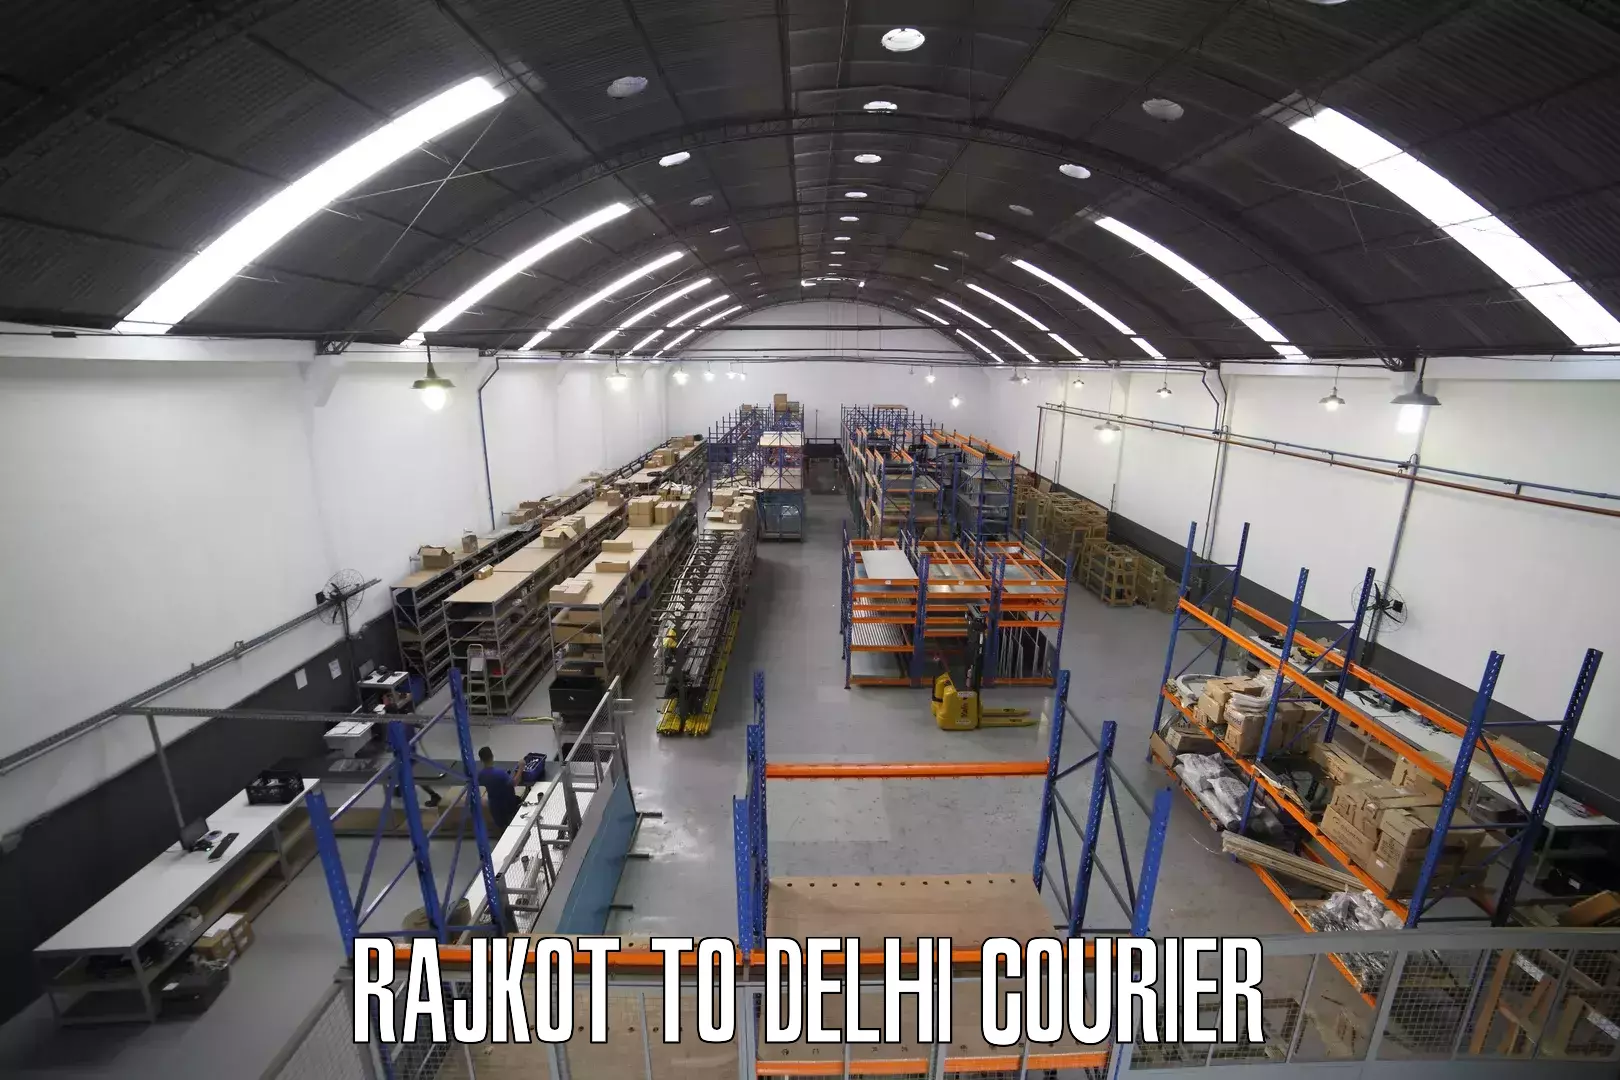 24-hour courier service Rajkot to Burari